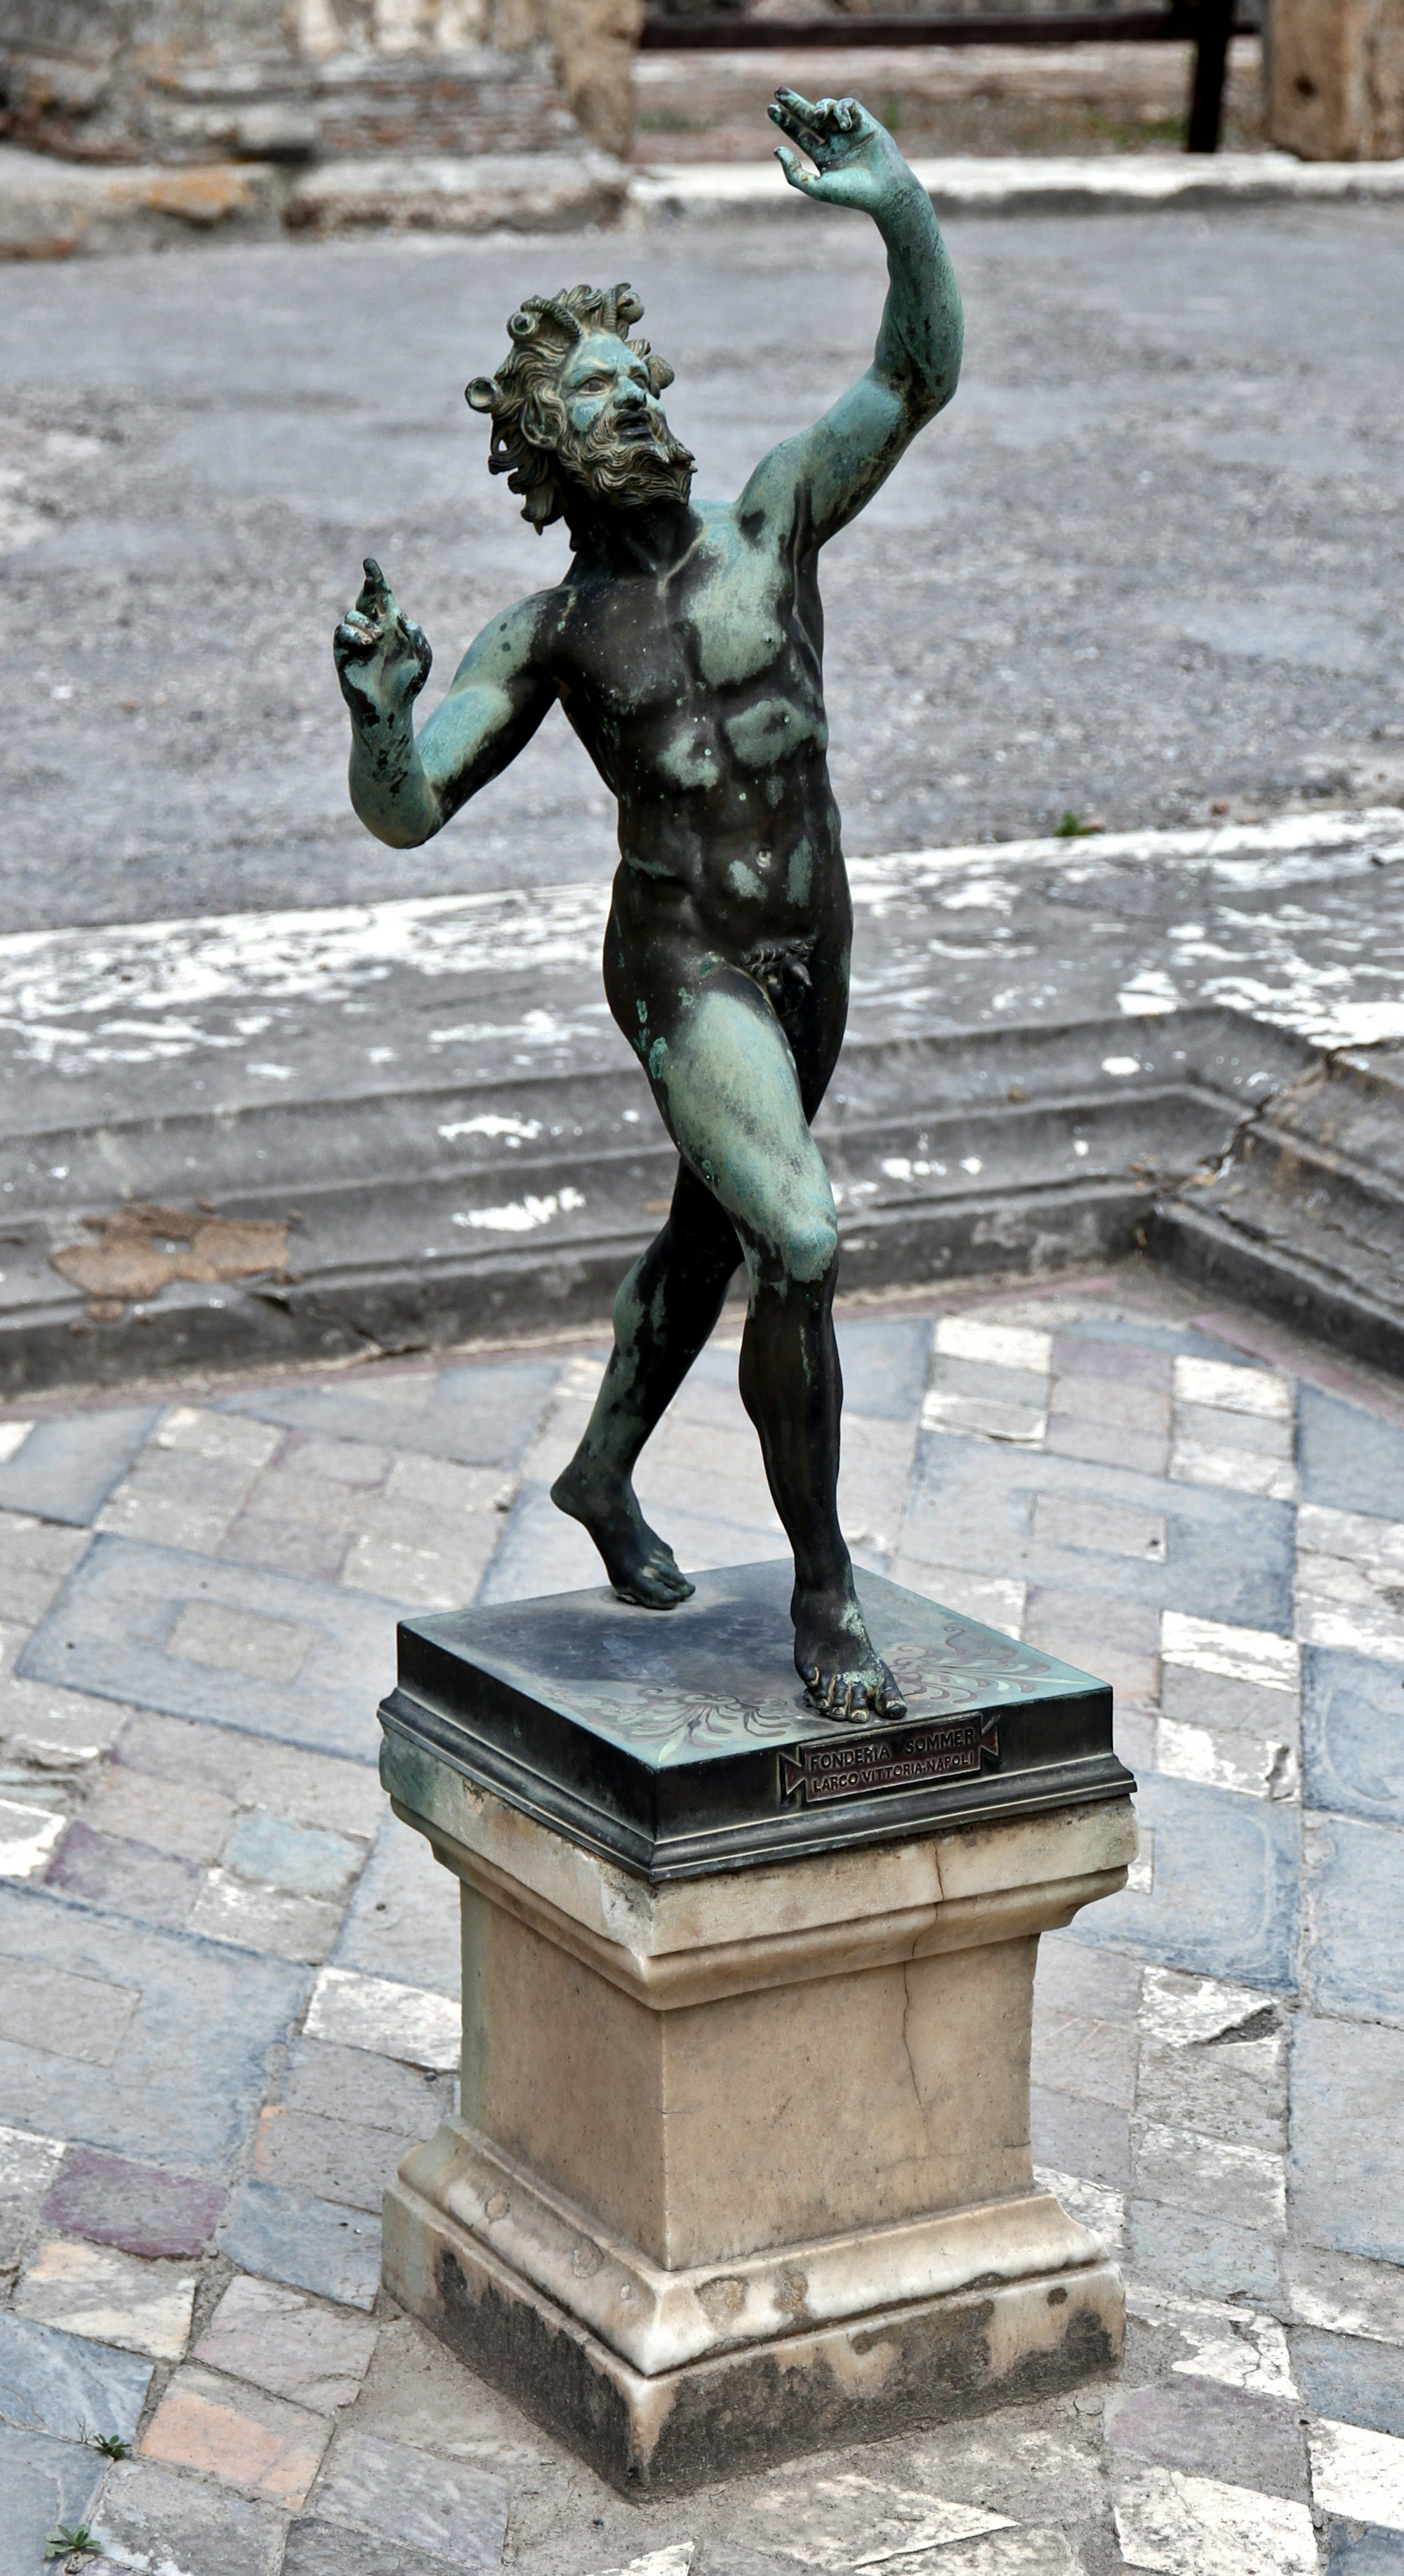 Statue in Pompei, Naples, Italy, June 2016